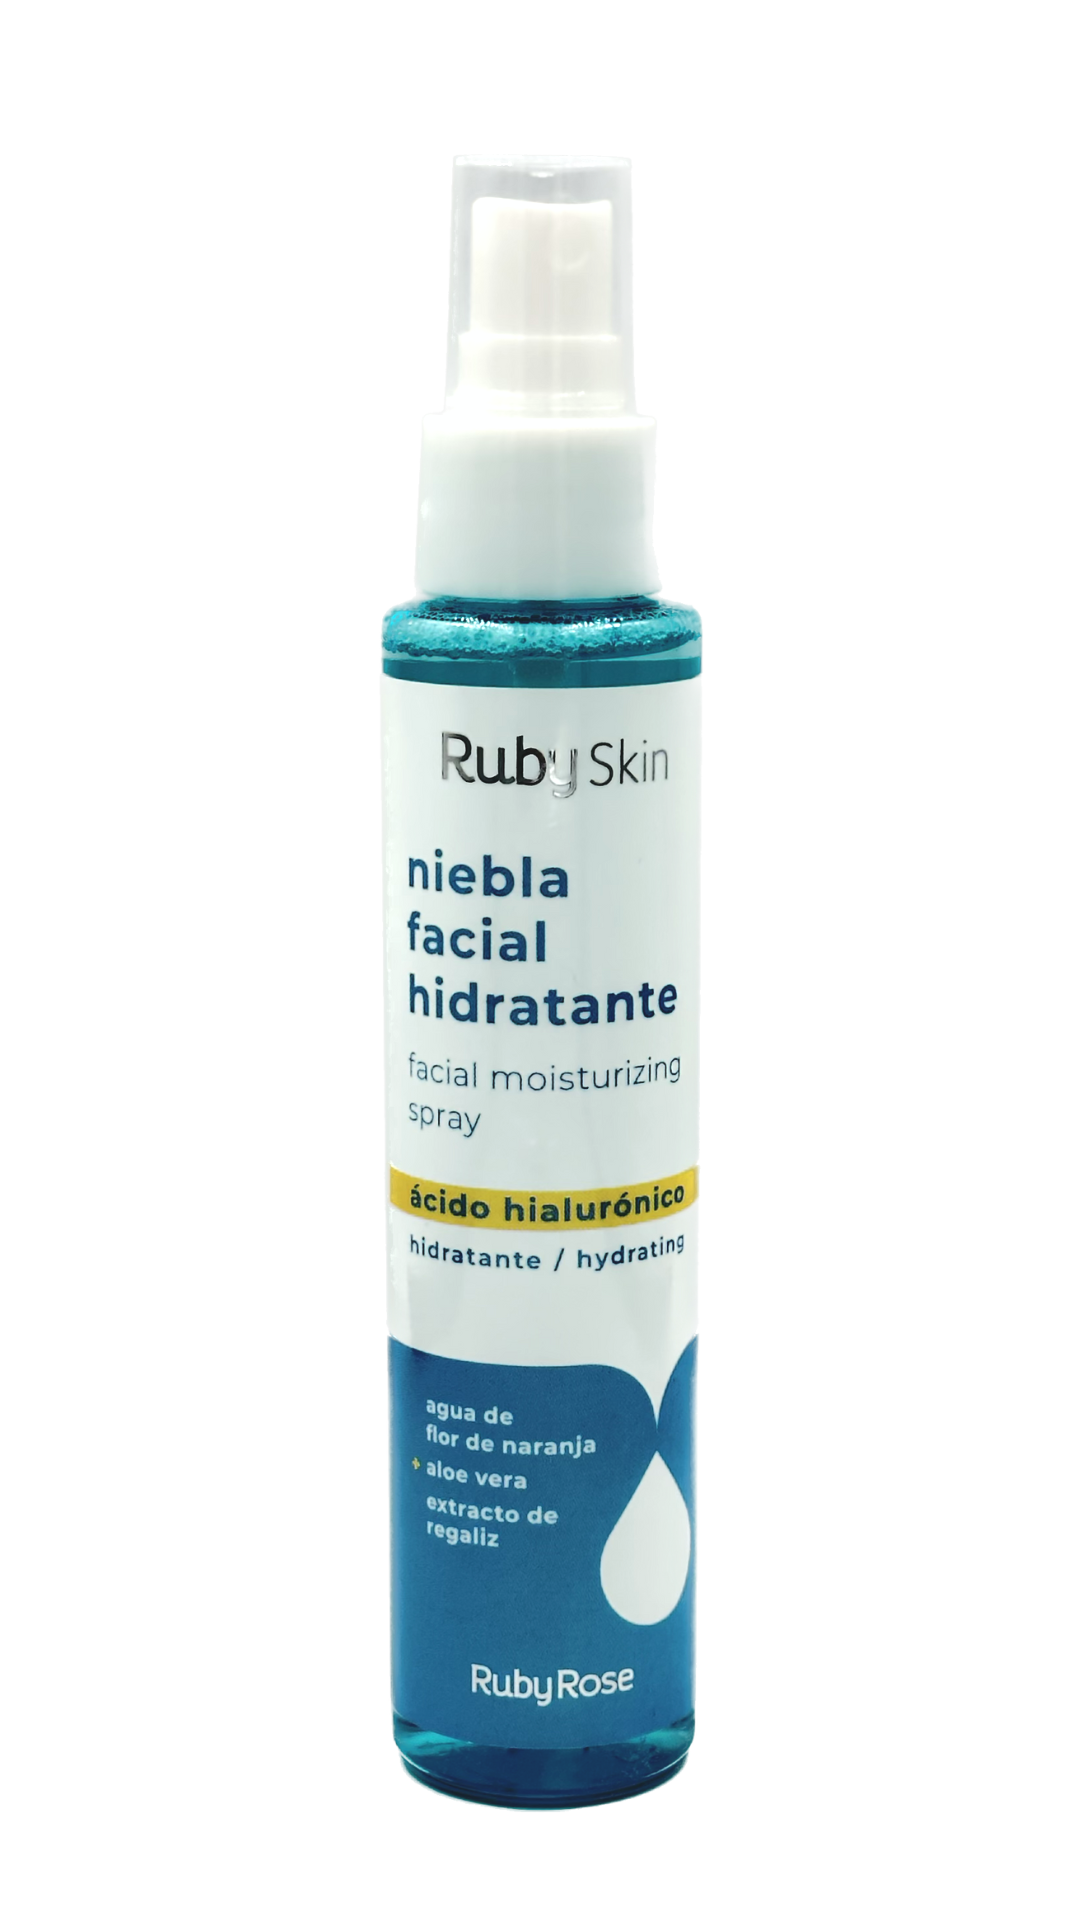 Espuma limpiadora desmaquillante facial con ácido hialurónico Ruby Skin –  Ruby Rose Cosméticos